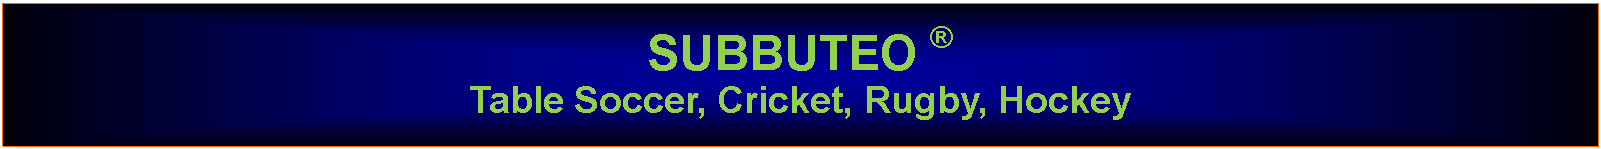 Text Box: SUBBUTEO  Table Soccer, Cricket, Rugby, Hockey 